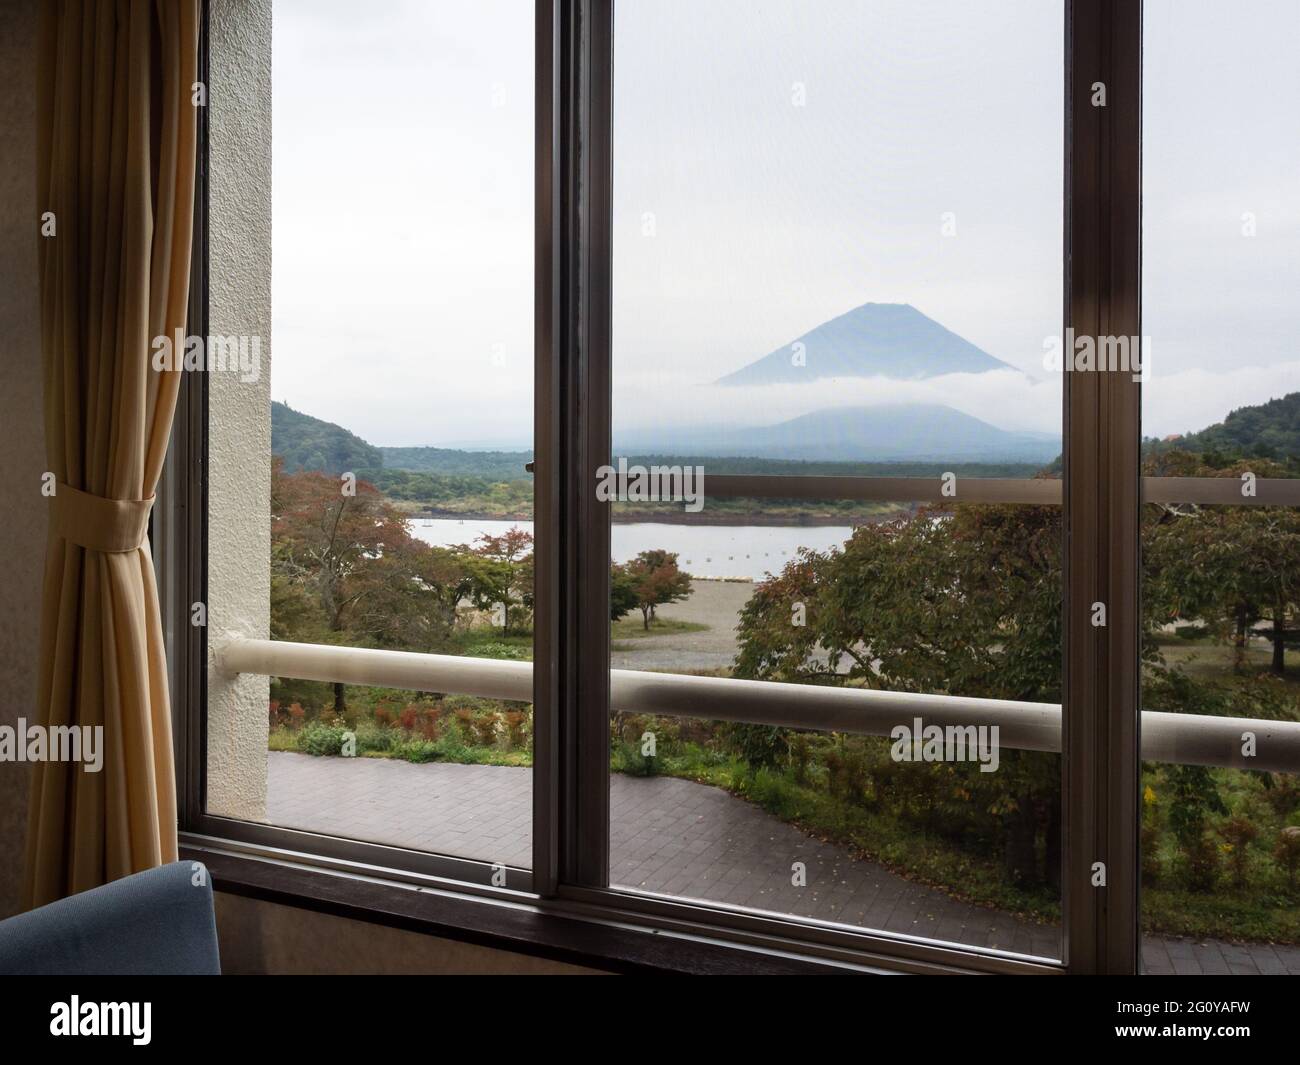 Fujikawaguchiko, Giappone - 17 Ottobre 2017: Vista del Lago Shoji e del Monte Fuji dalla camera dell'Hotel Yamadaya Foto Stock